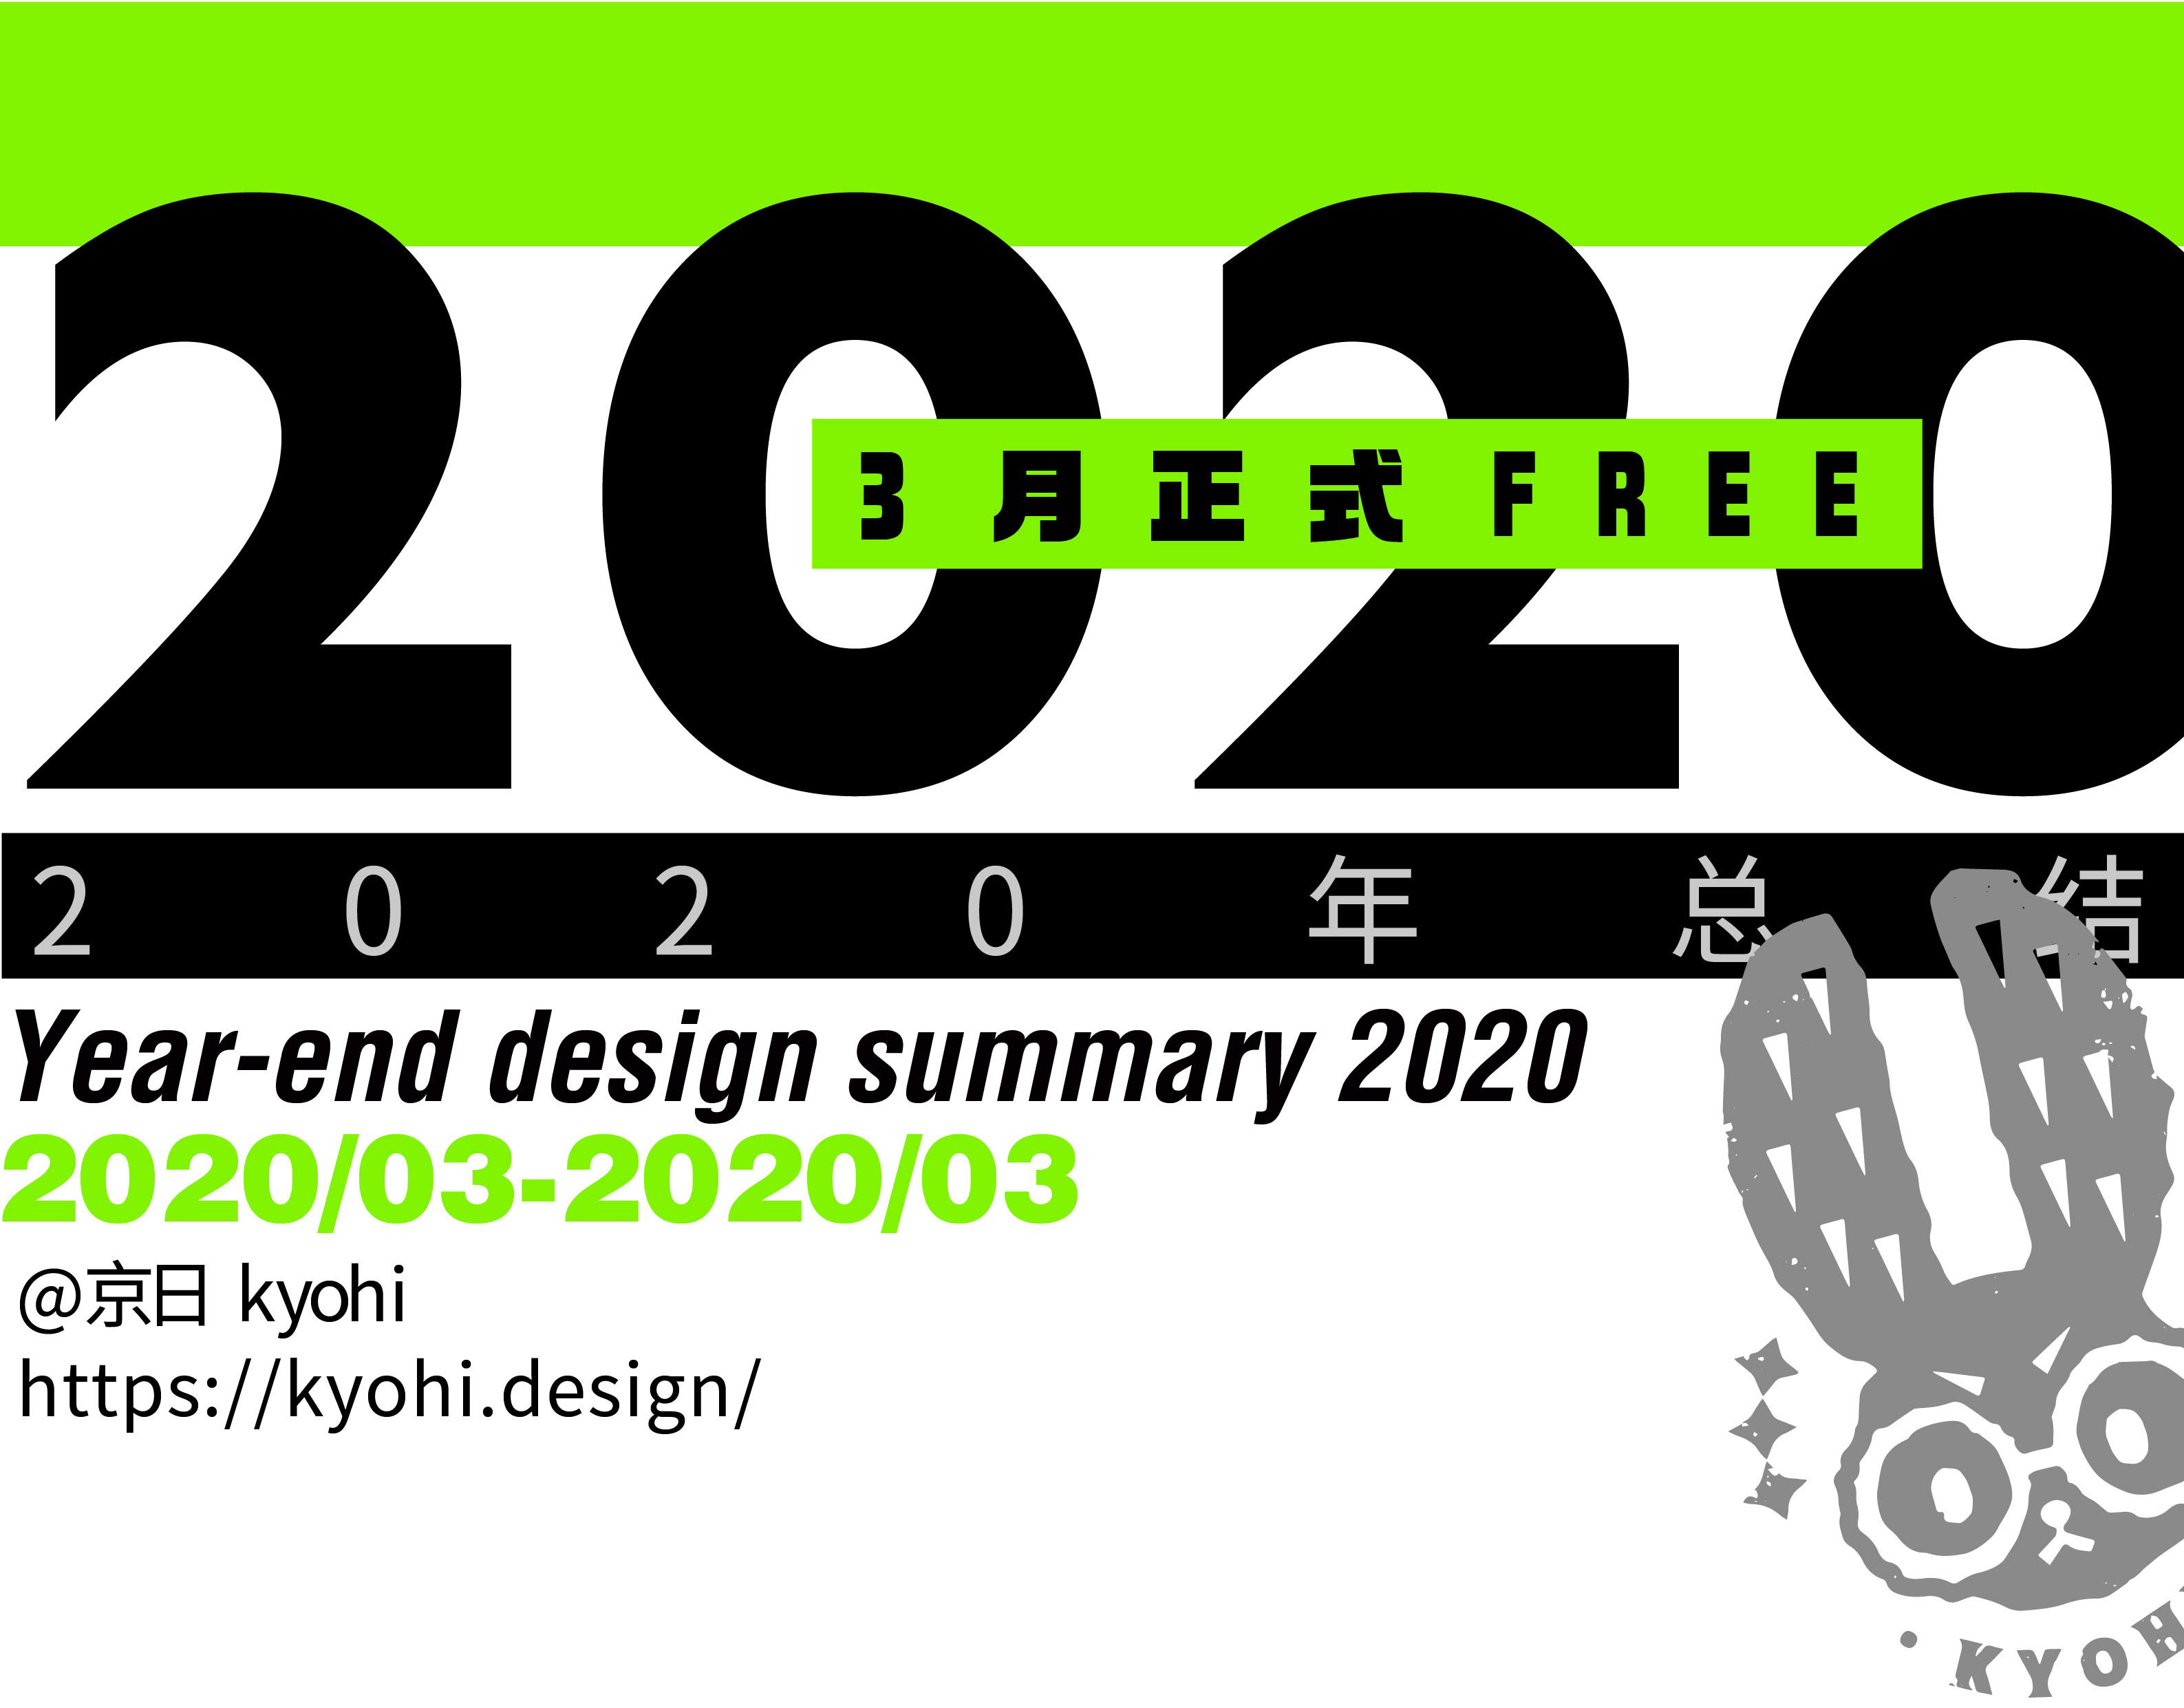 Kyohi Design